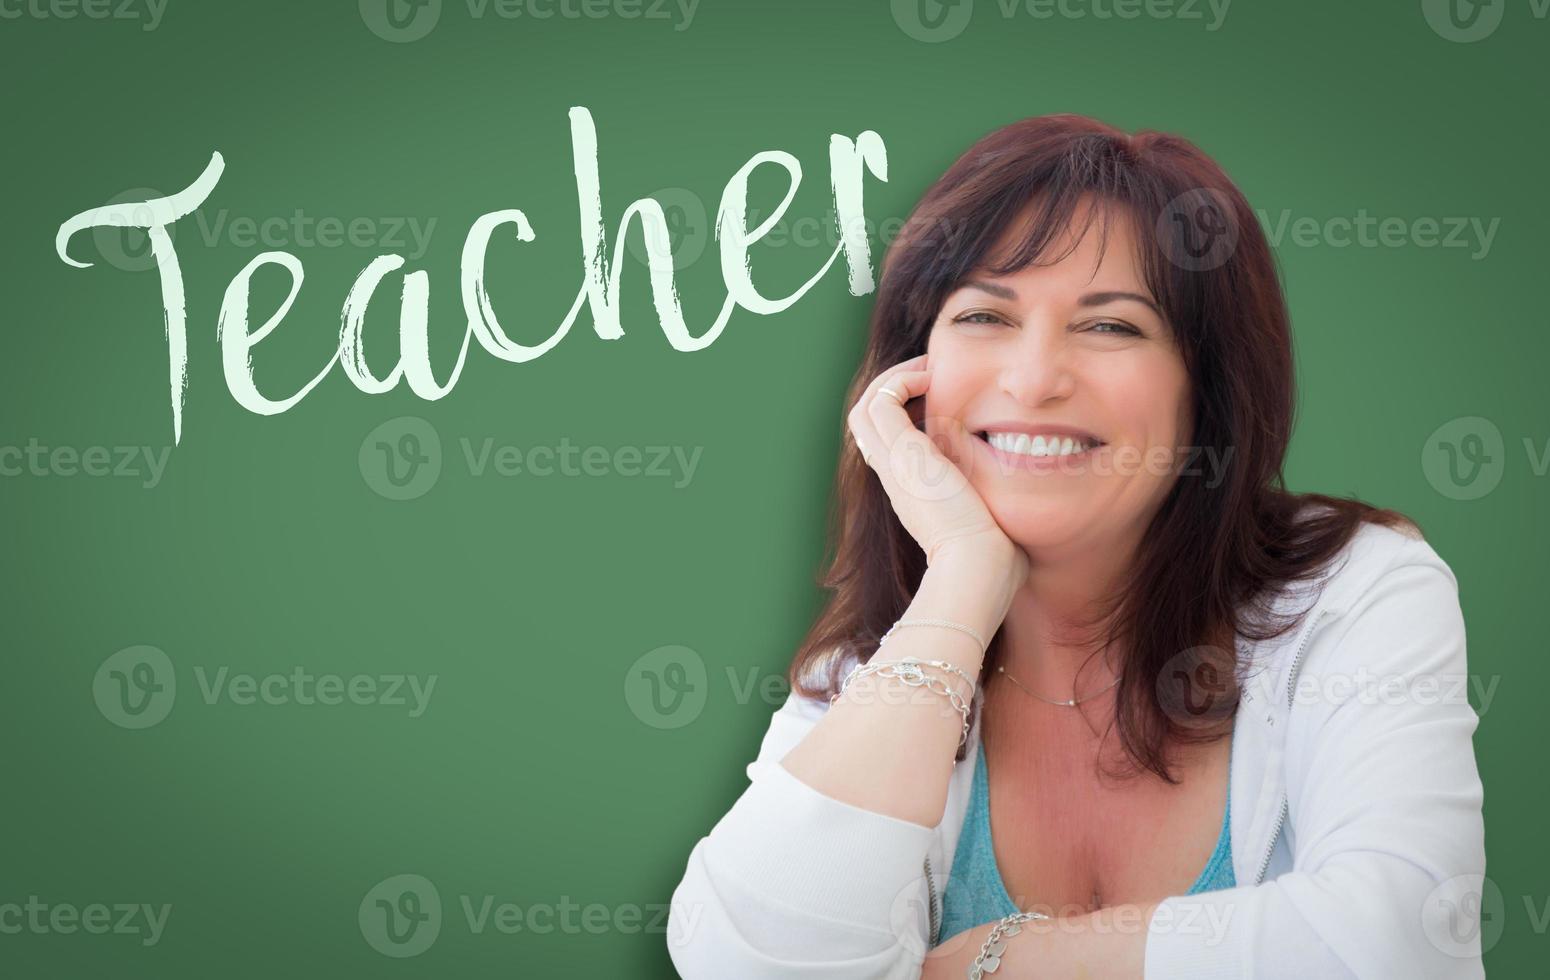 professor escrito na lousa verde atrás de uma mulher sorridente de meia idade foto